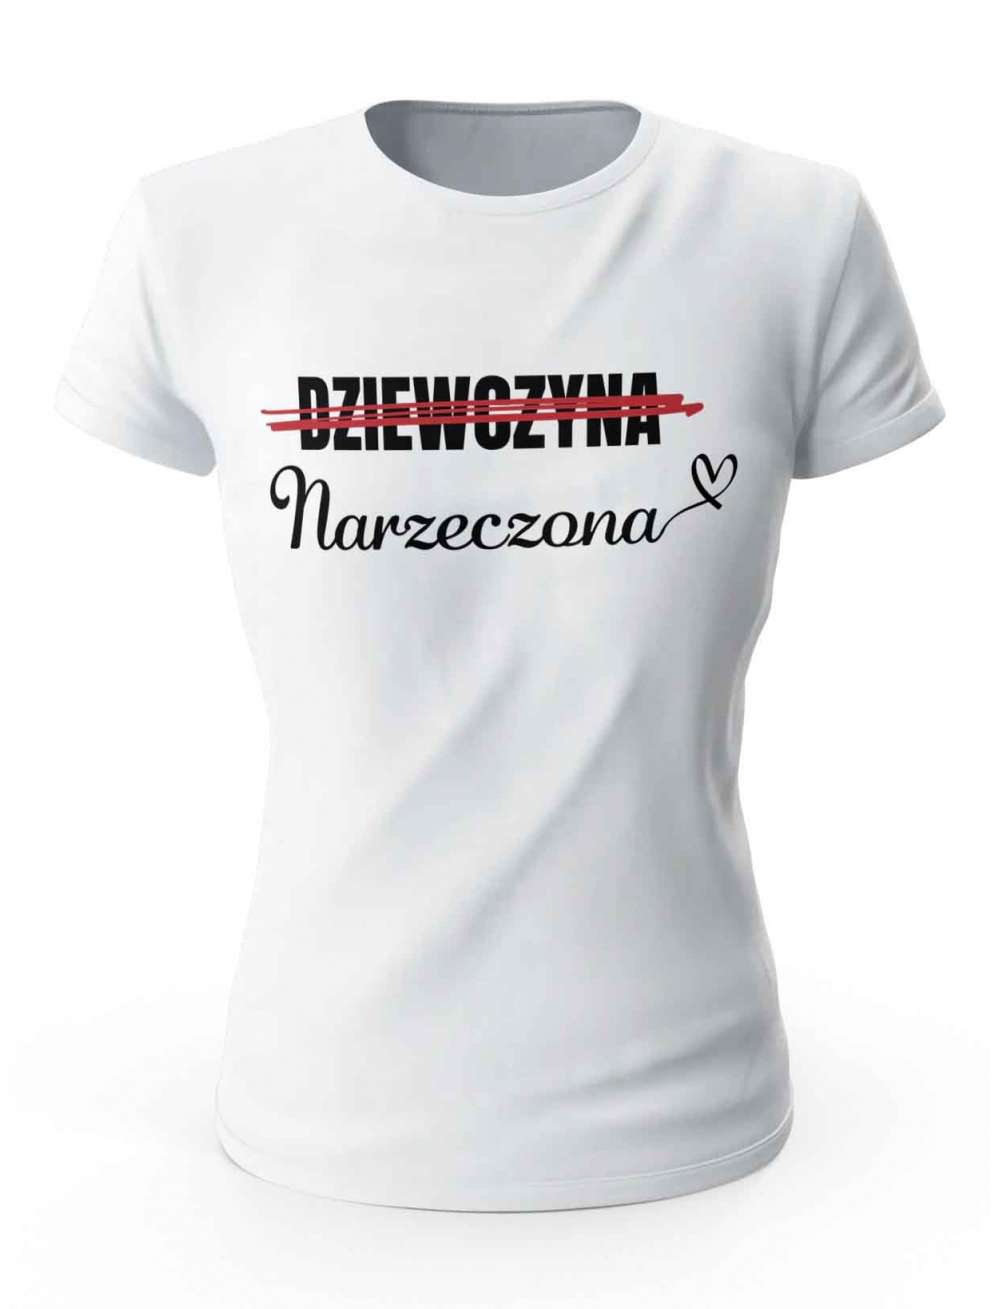 Koszulka Dziewczyna Narzeczona, T-shirt Damski